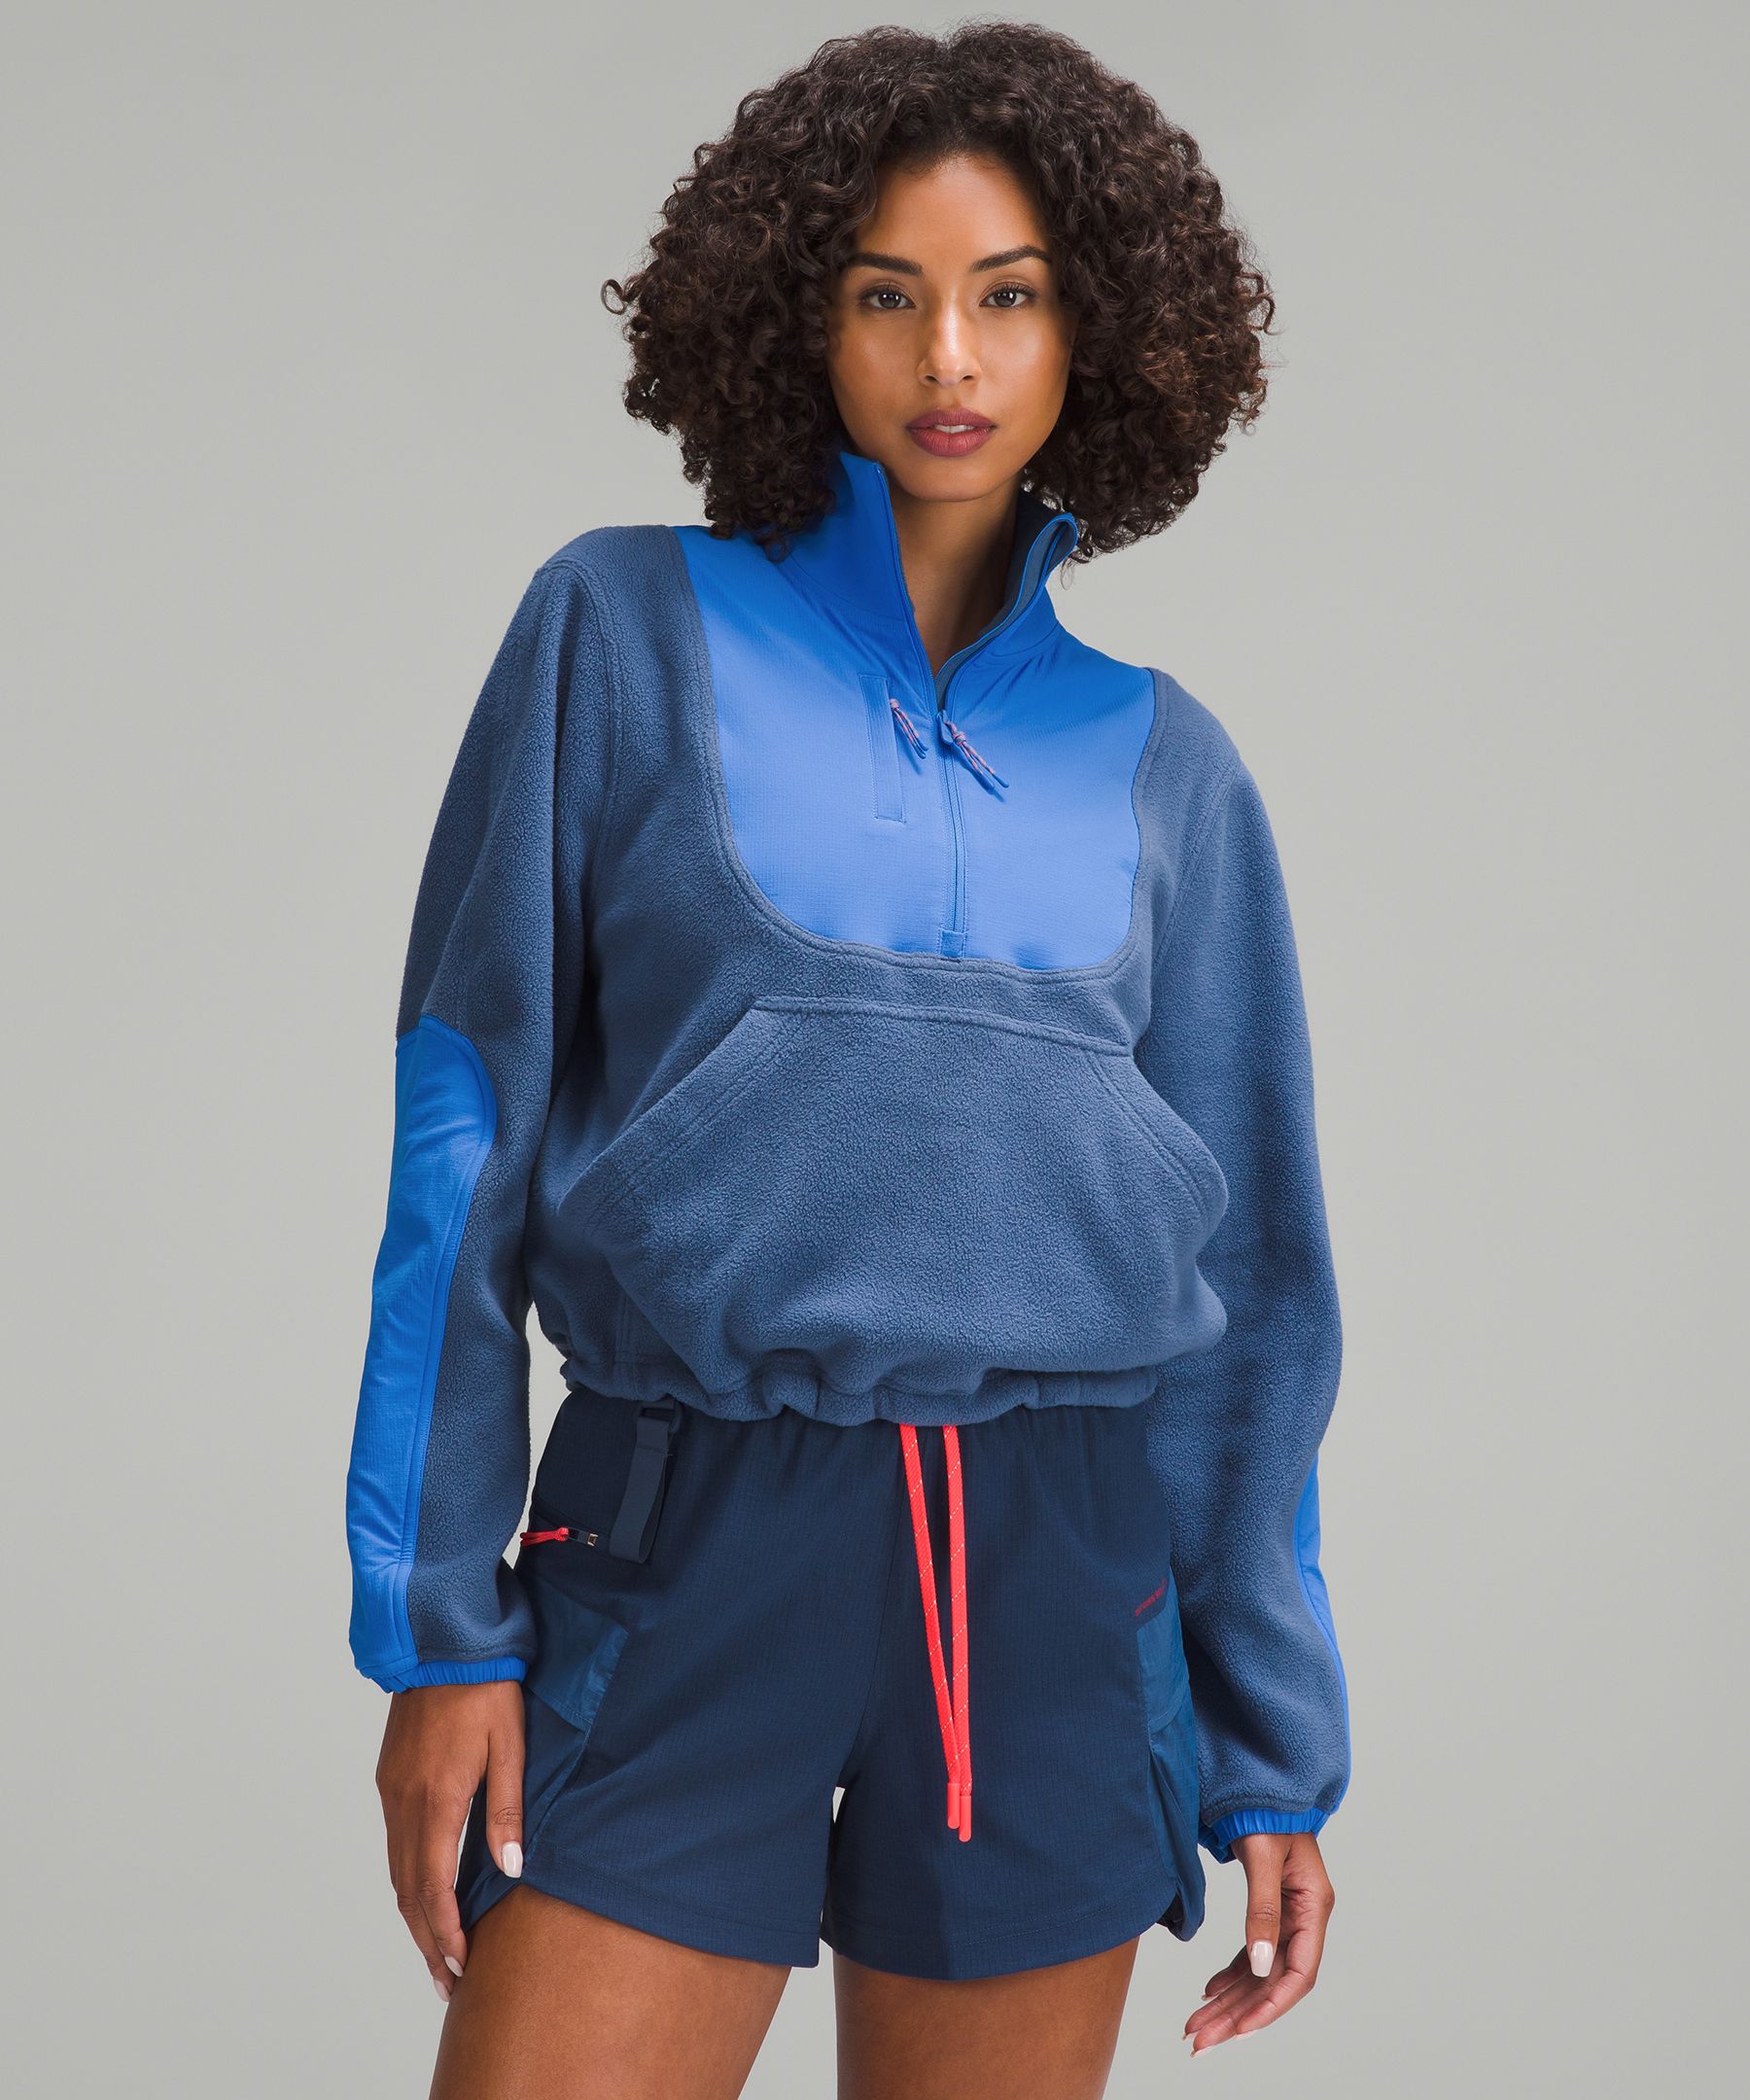 LUYAA Womens Crop Sweatshirt Quarter Zip Fleece Lined Pullover